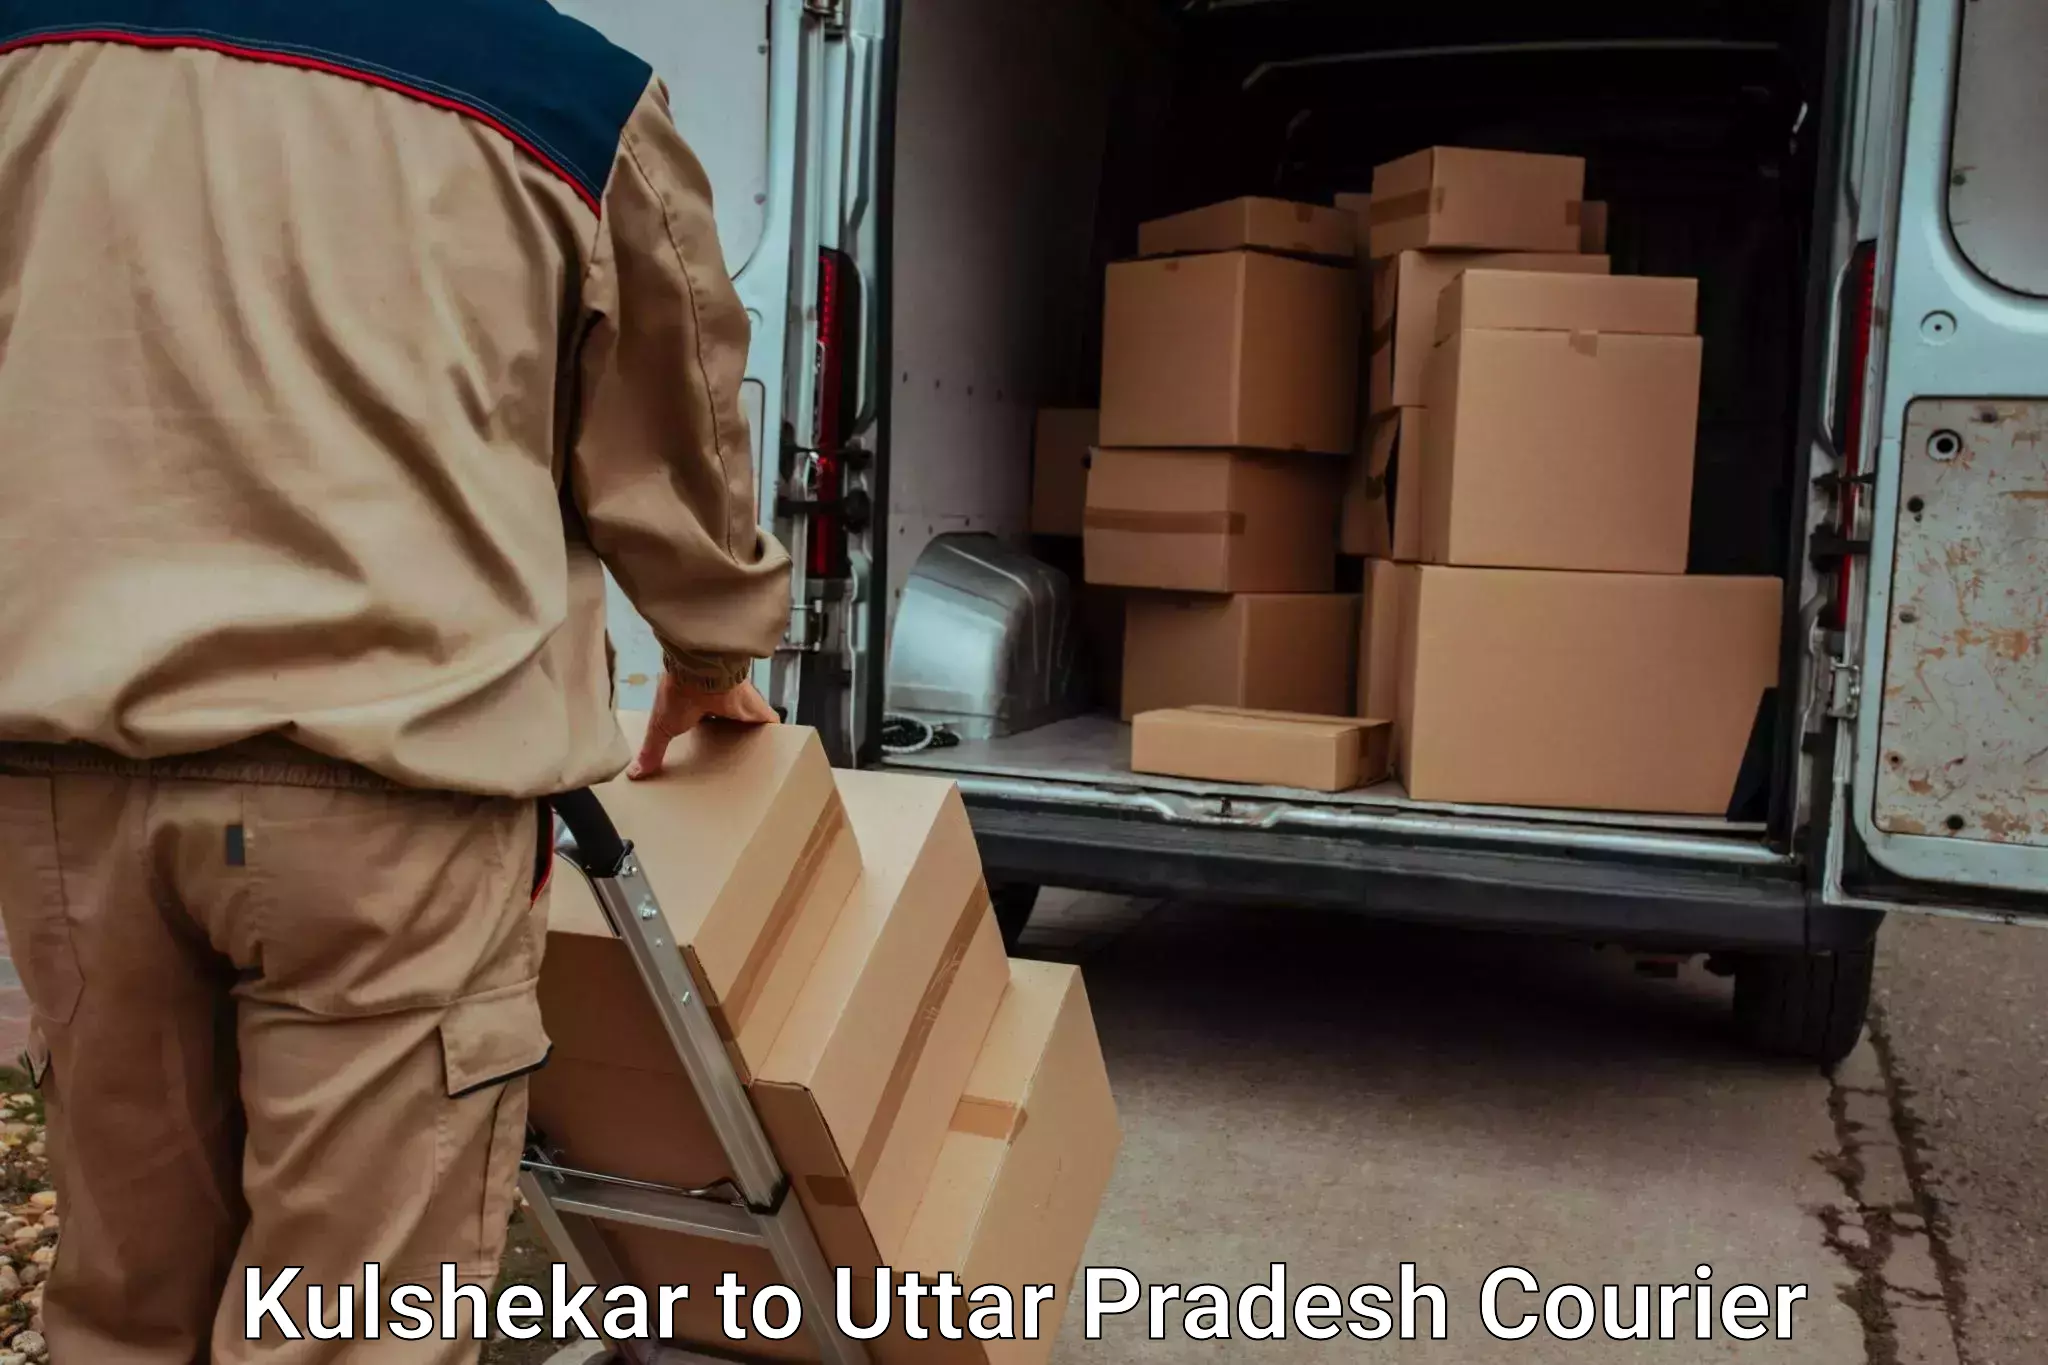 Residential moving experts Kulshekar to Muzaffarnagar